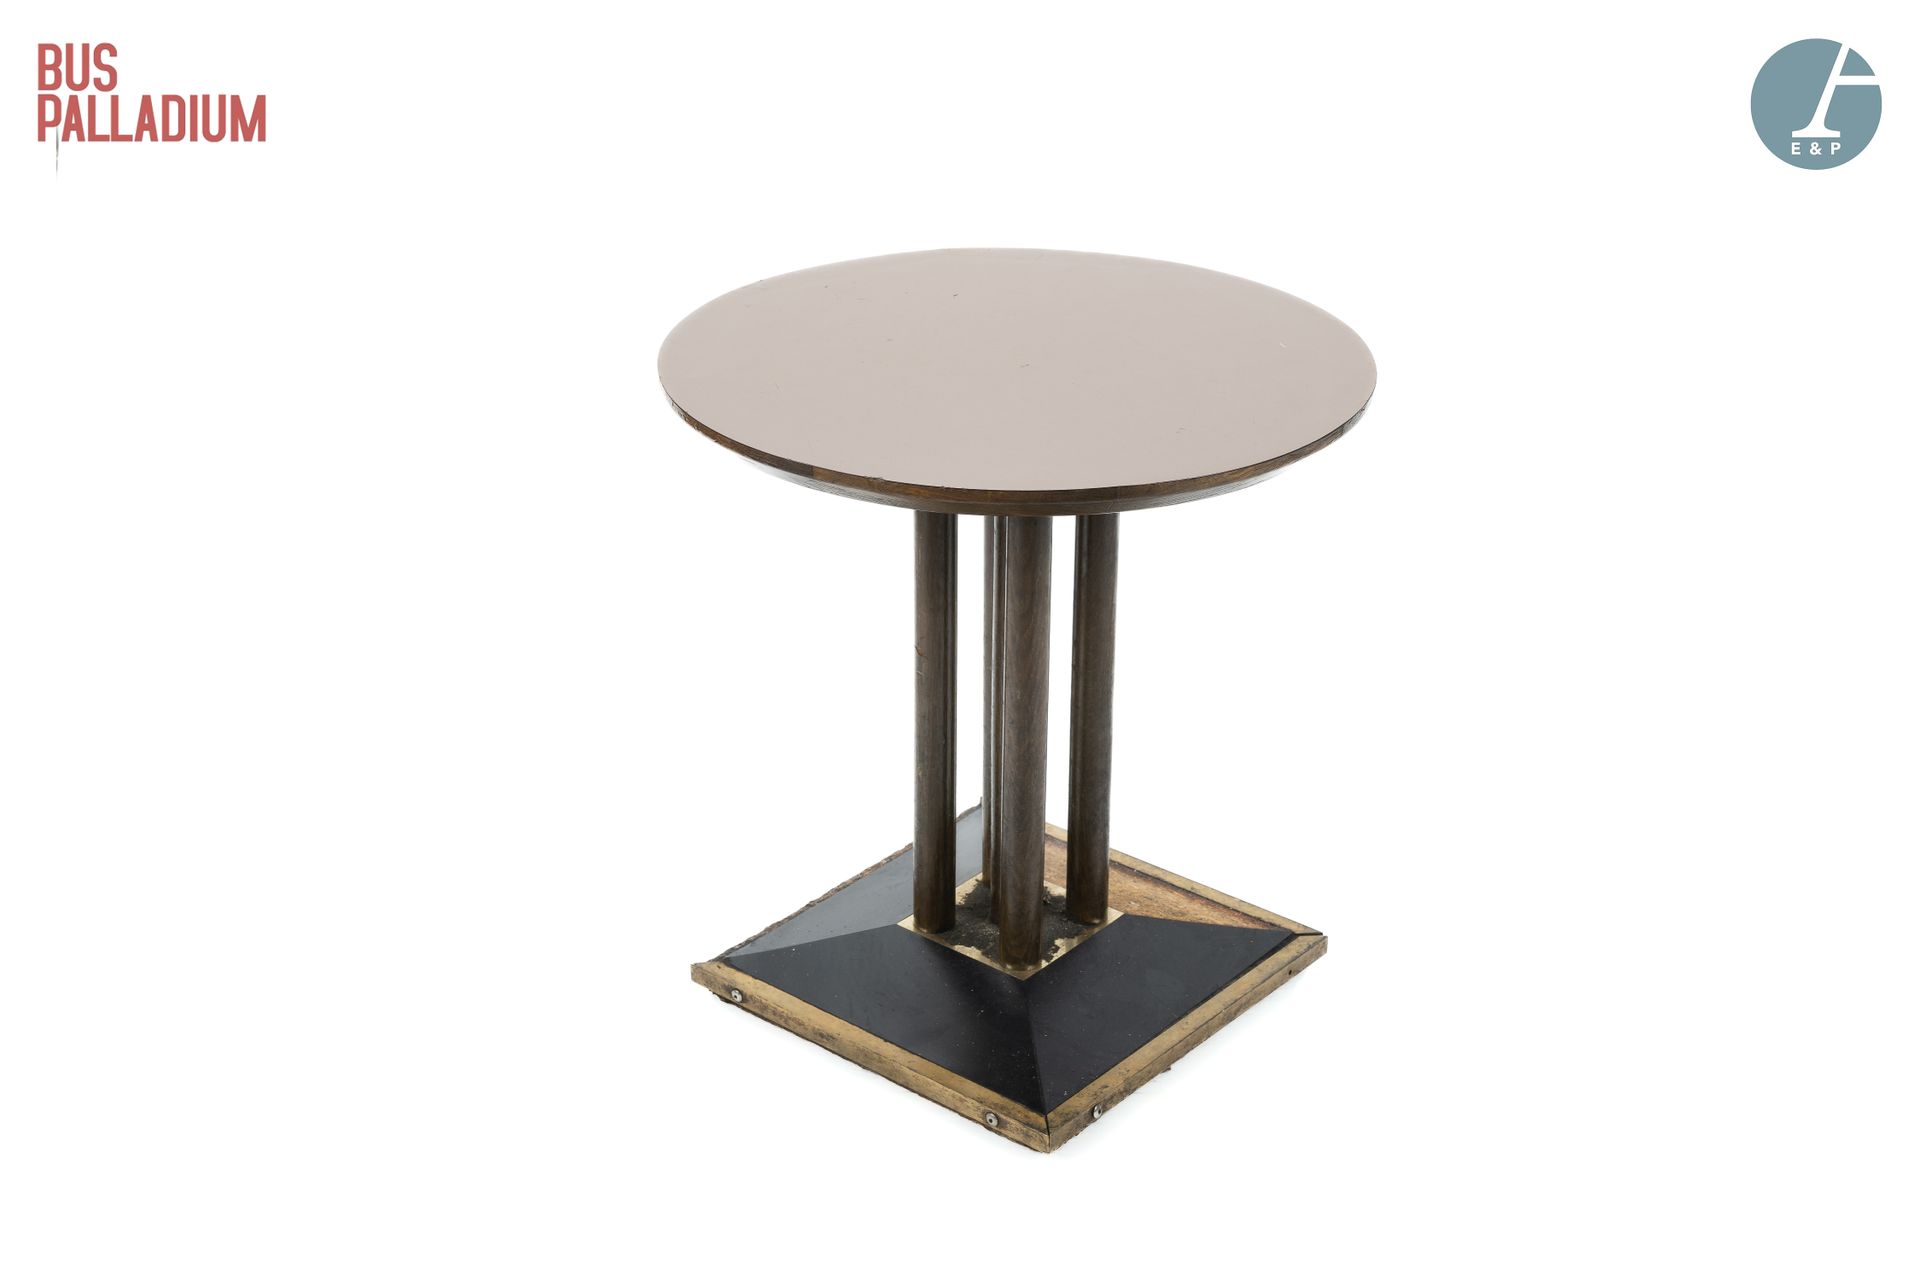 Null 棕色层压木茶几，圆形的桌面放置在四个圆柱体上，最后是一个方形的底座。



高：62厘米 - 深：60厘米



使用状况，底座上缺少一块饰板。